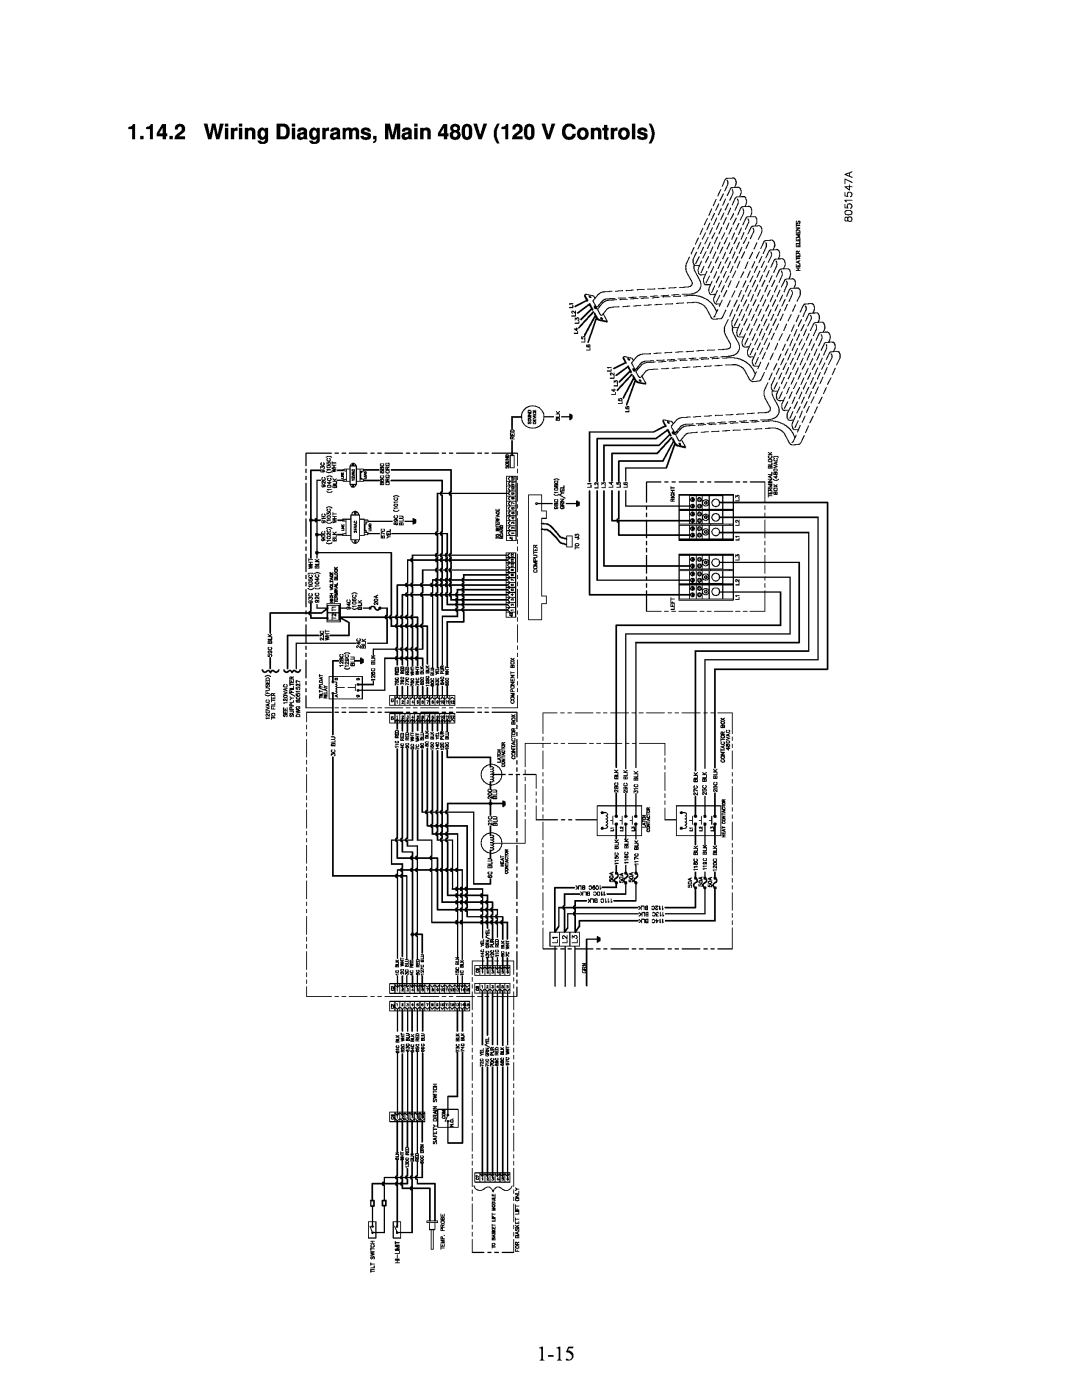 Frymaster 2836 manual Wiring Diagrams, Main 480V 120 V Controls 